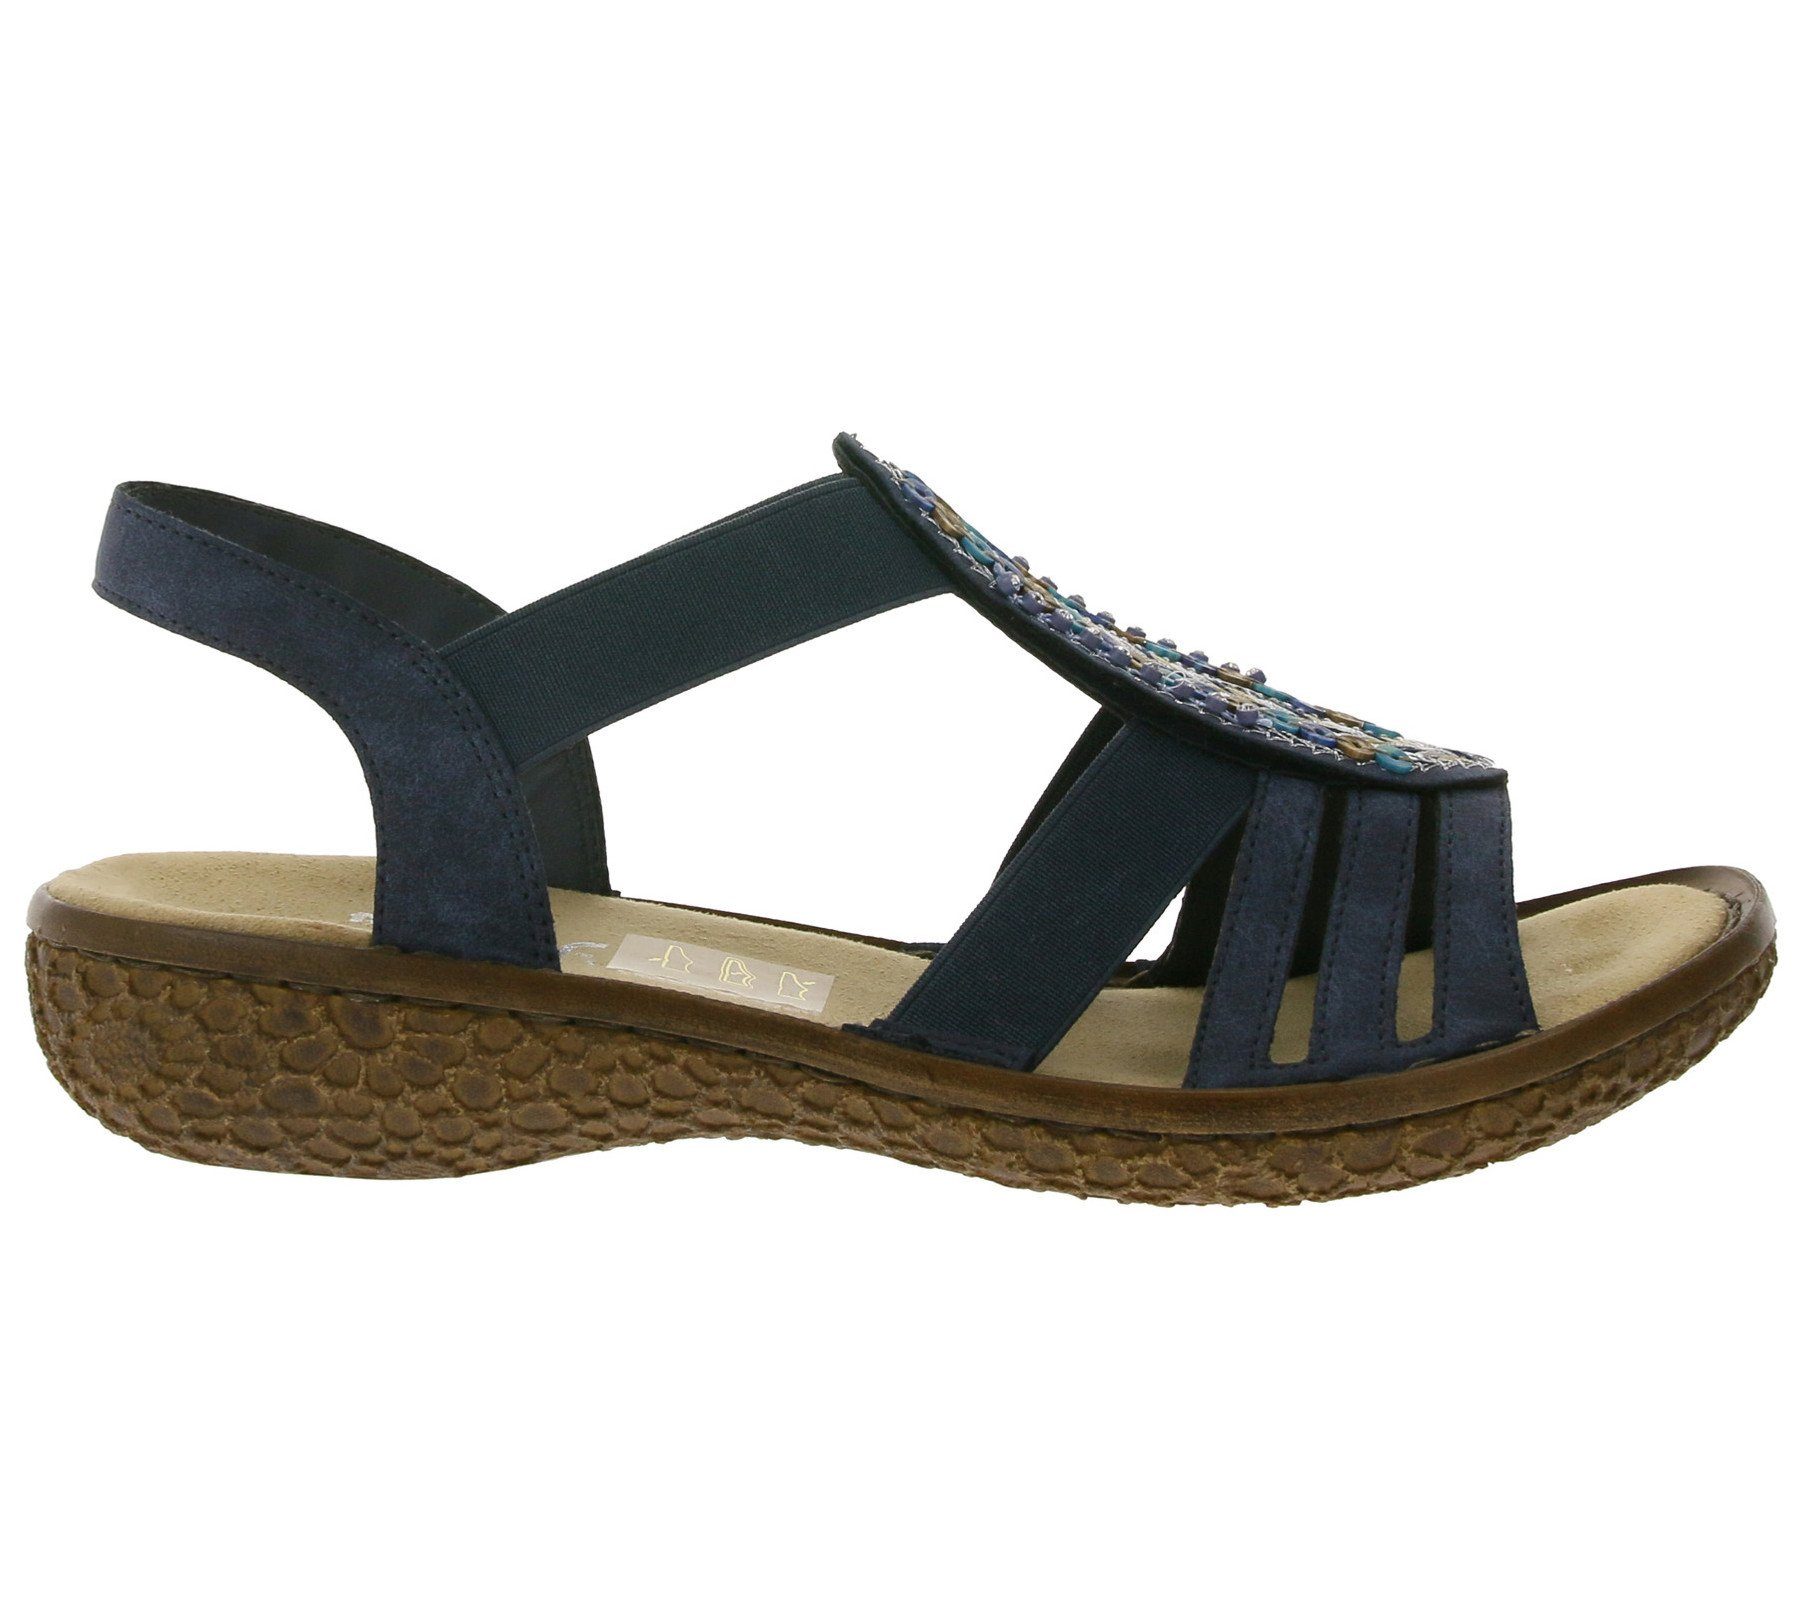 Rieker »rieker Sandalette bequeme Damen Sommer-Schuhe mit Pailletten Anti  Stress Sandalen Dunkelblau« Outdoorschuh online kaufen | OTTO